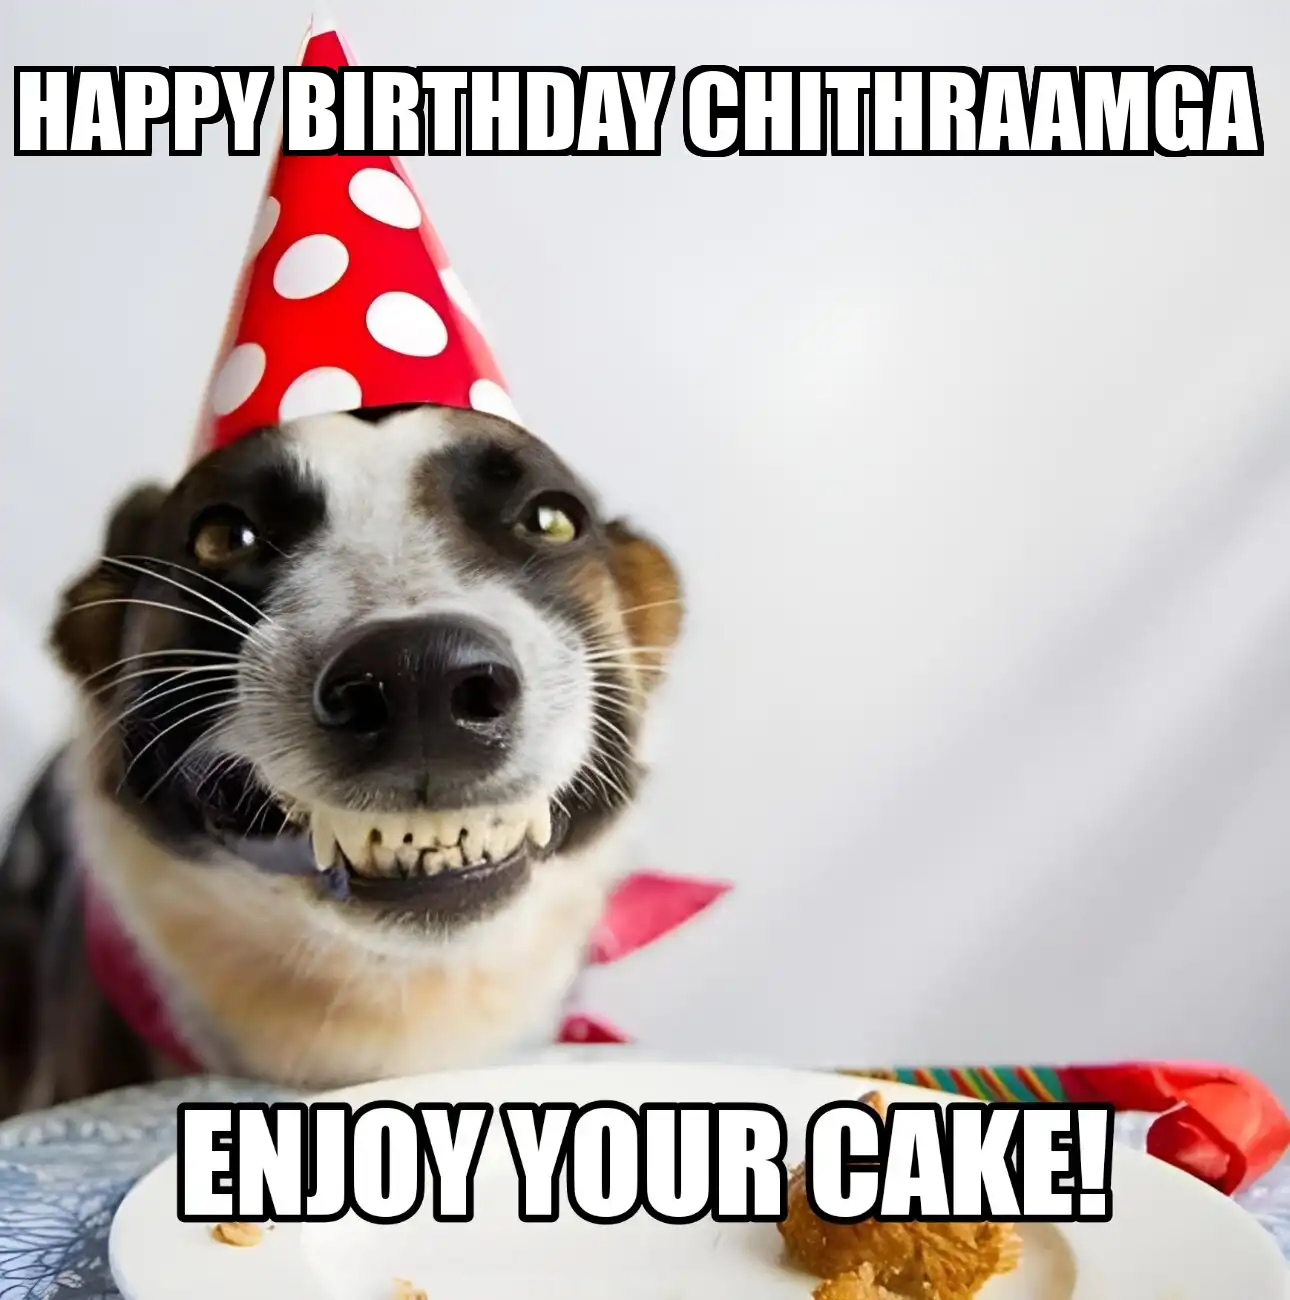 Happy Birthday Chithraamga Enjoy Your Cake Dog Meme